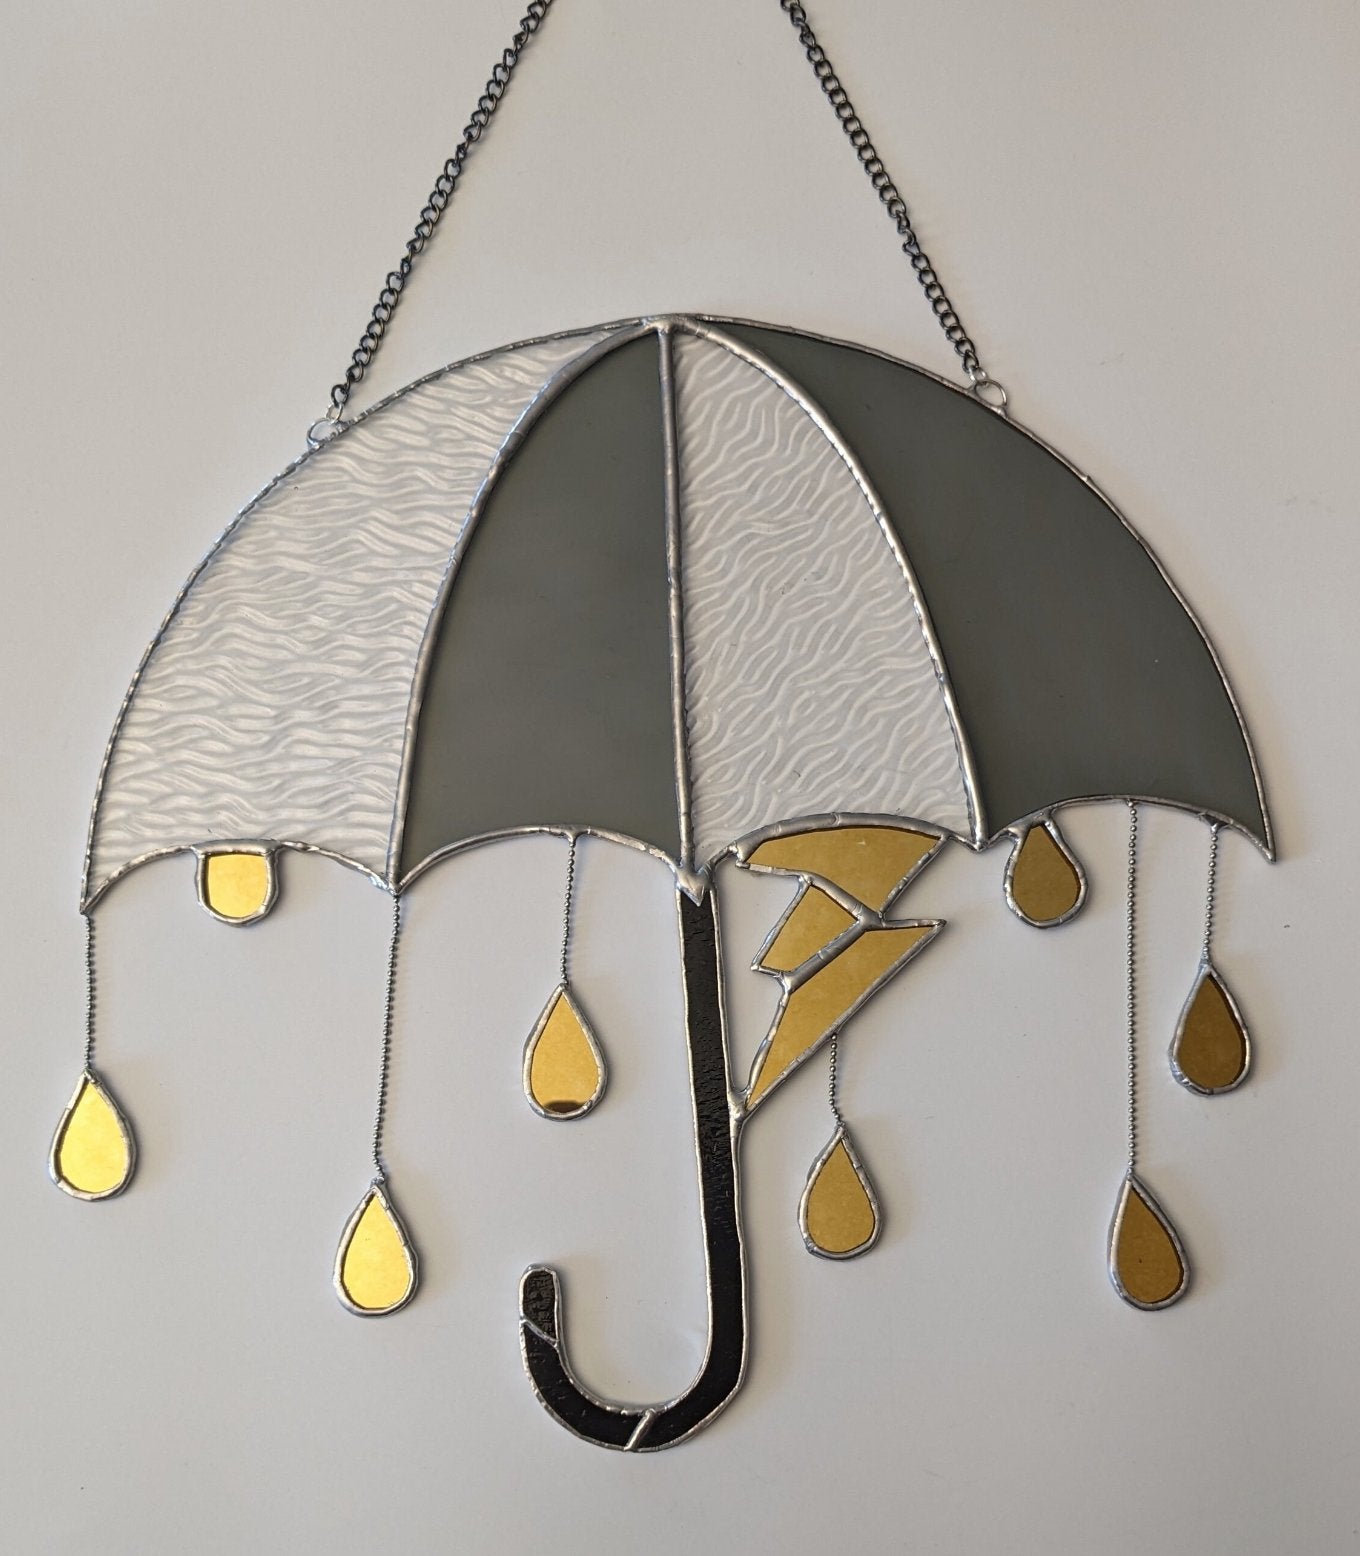 Parapluie géant avec goutte de pluie miroir - Tue Lamour